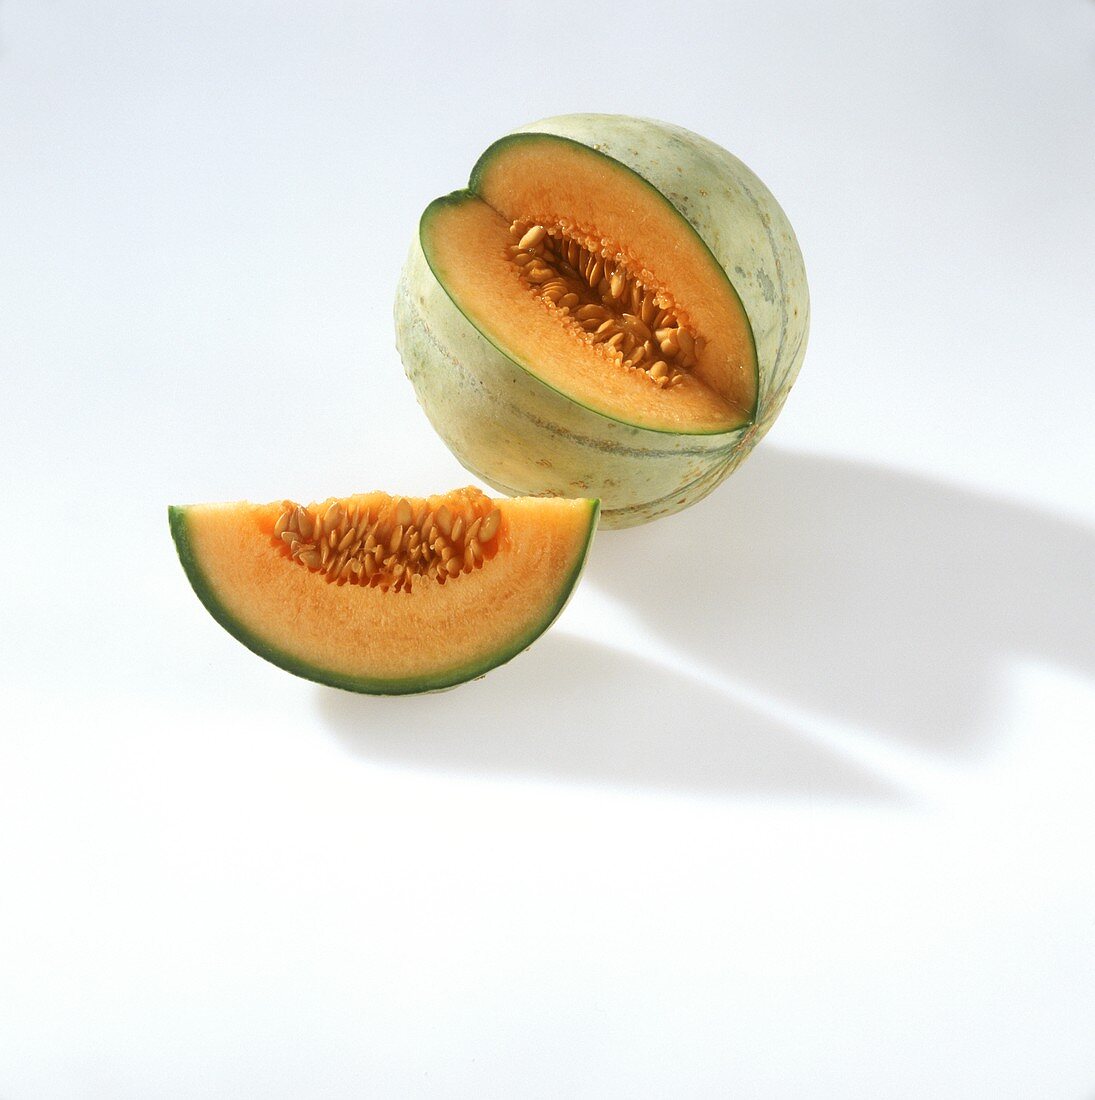 Cantaloupemelone, ein Viertel herausgeschnitten